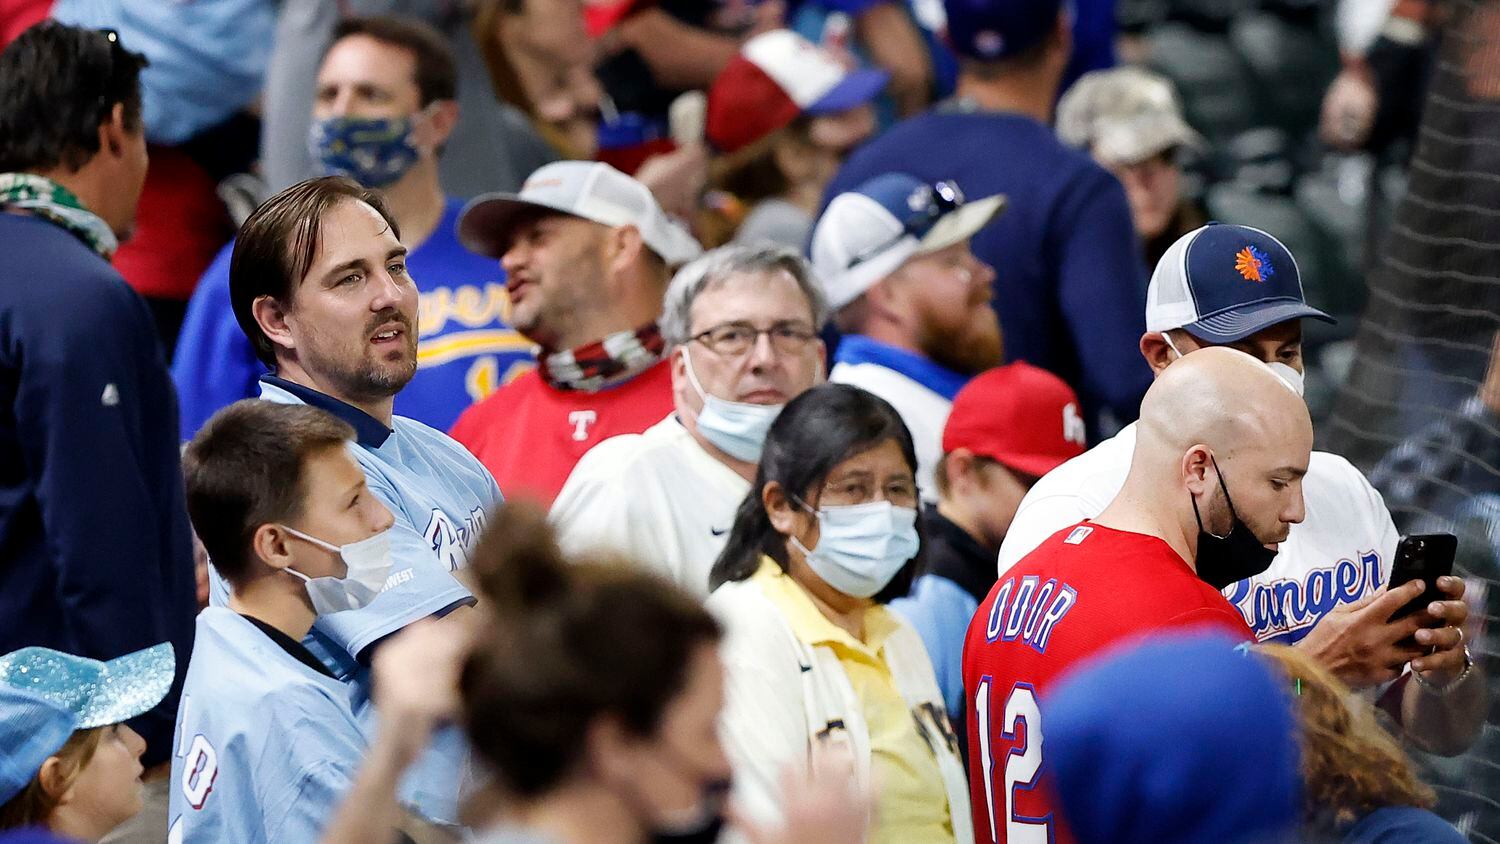 Texas Rangers Fans Show Their Team Spirit with Blue Hair - wide 10